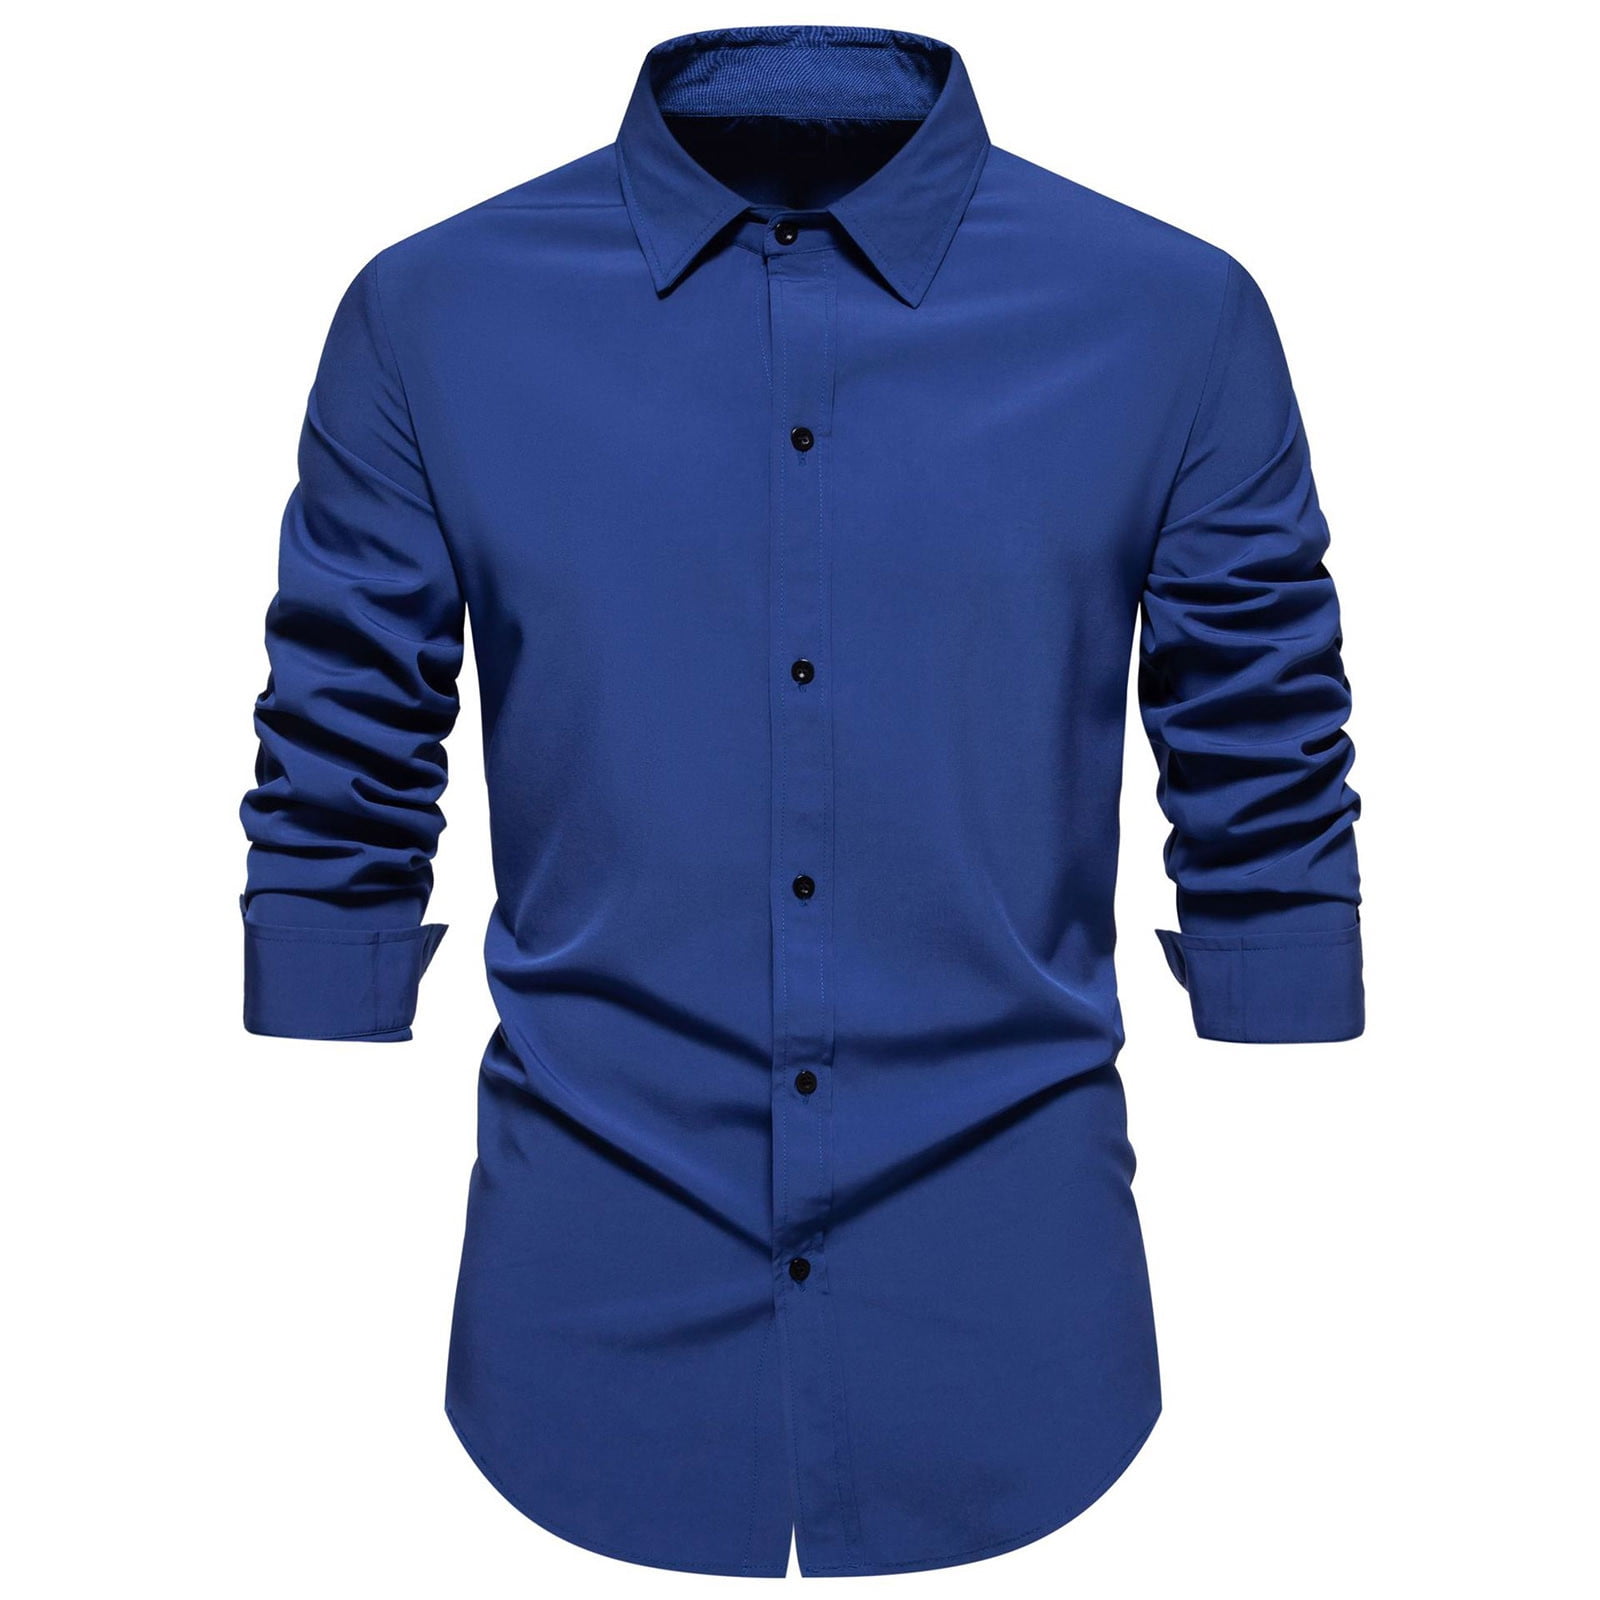 DDAPJ pyju Men's Rgular Fit Dress Shirt Clearance Sales,Wrinkle-Free ...